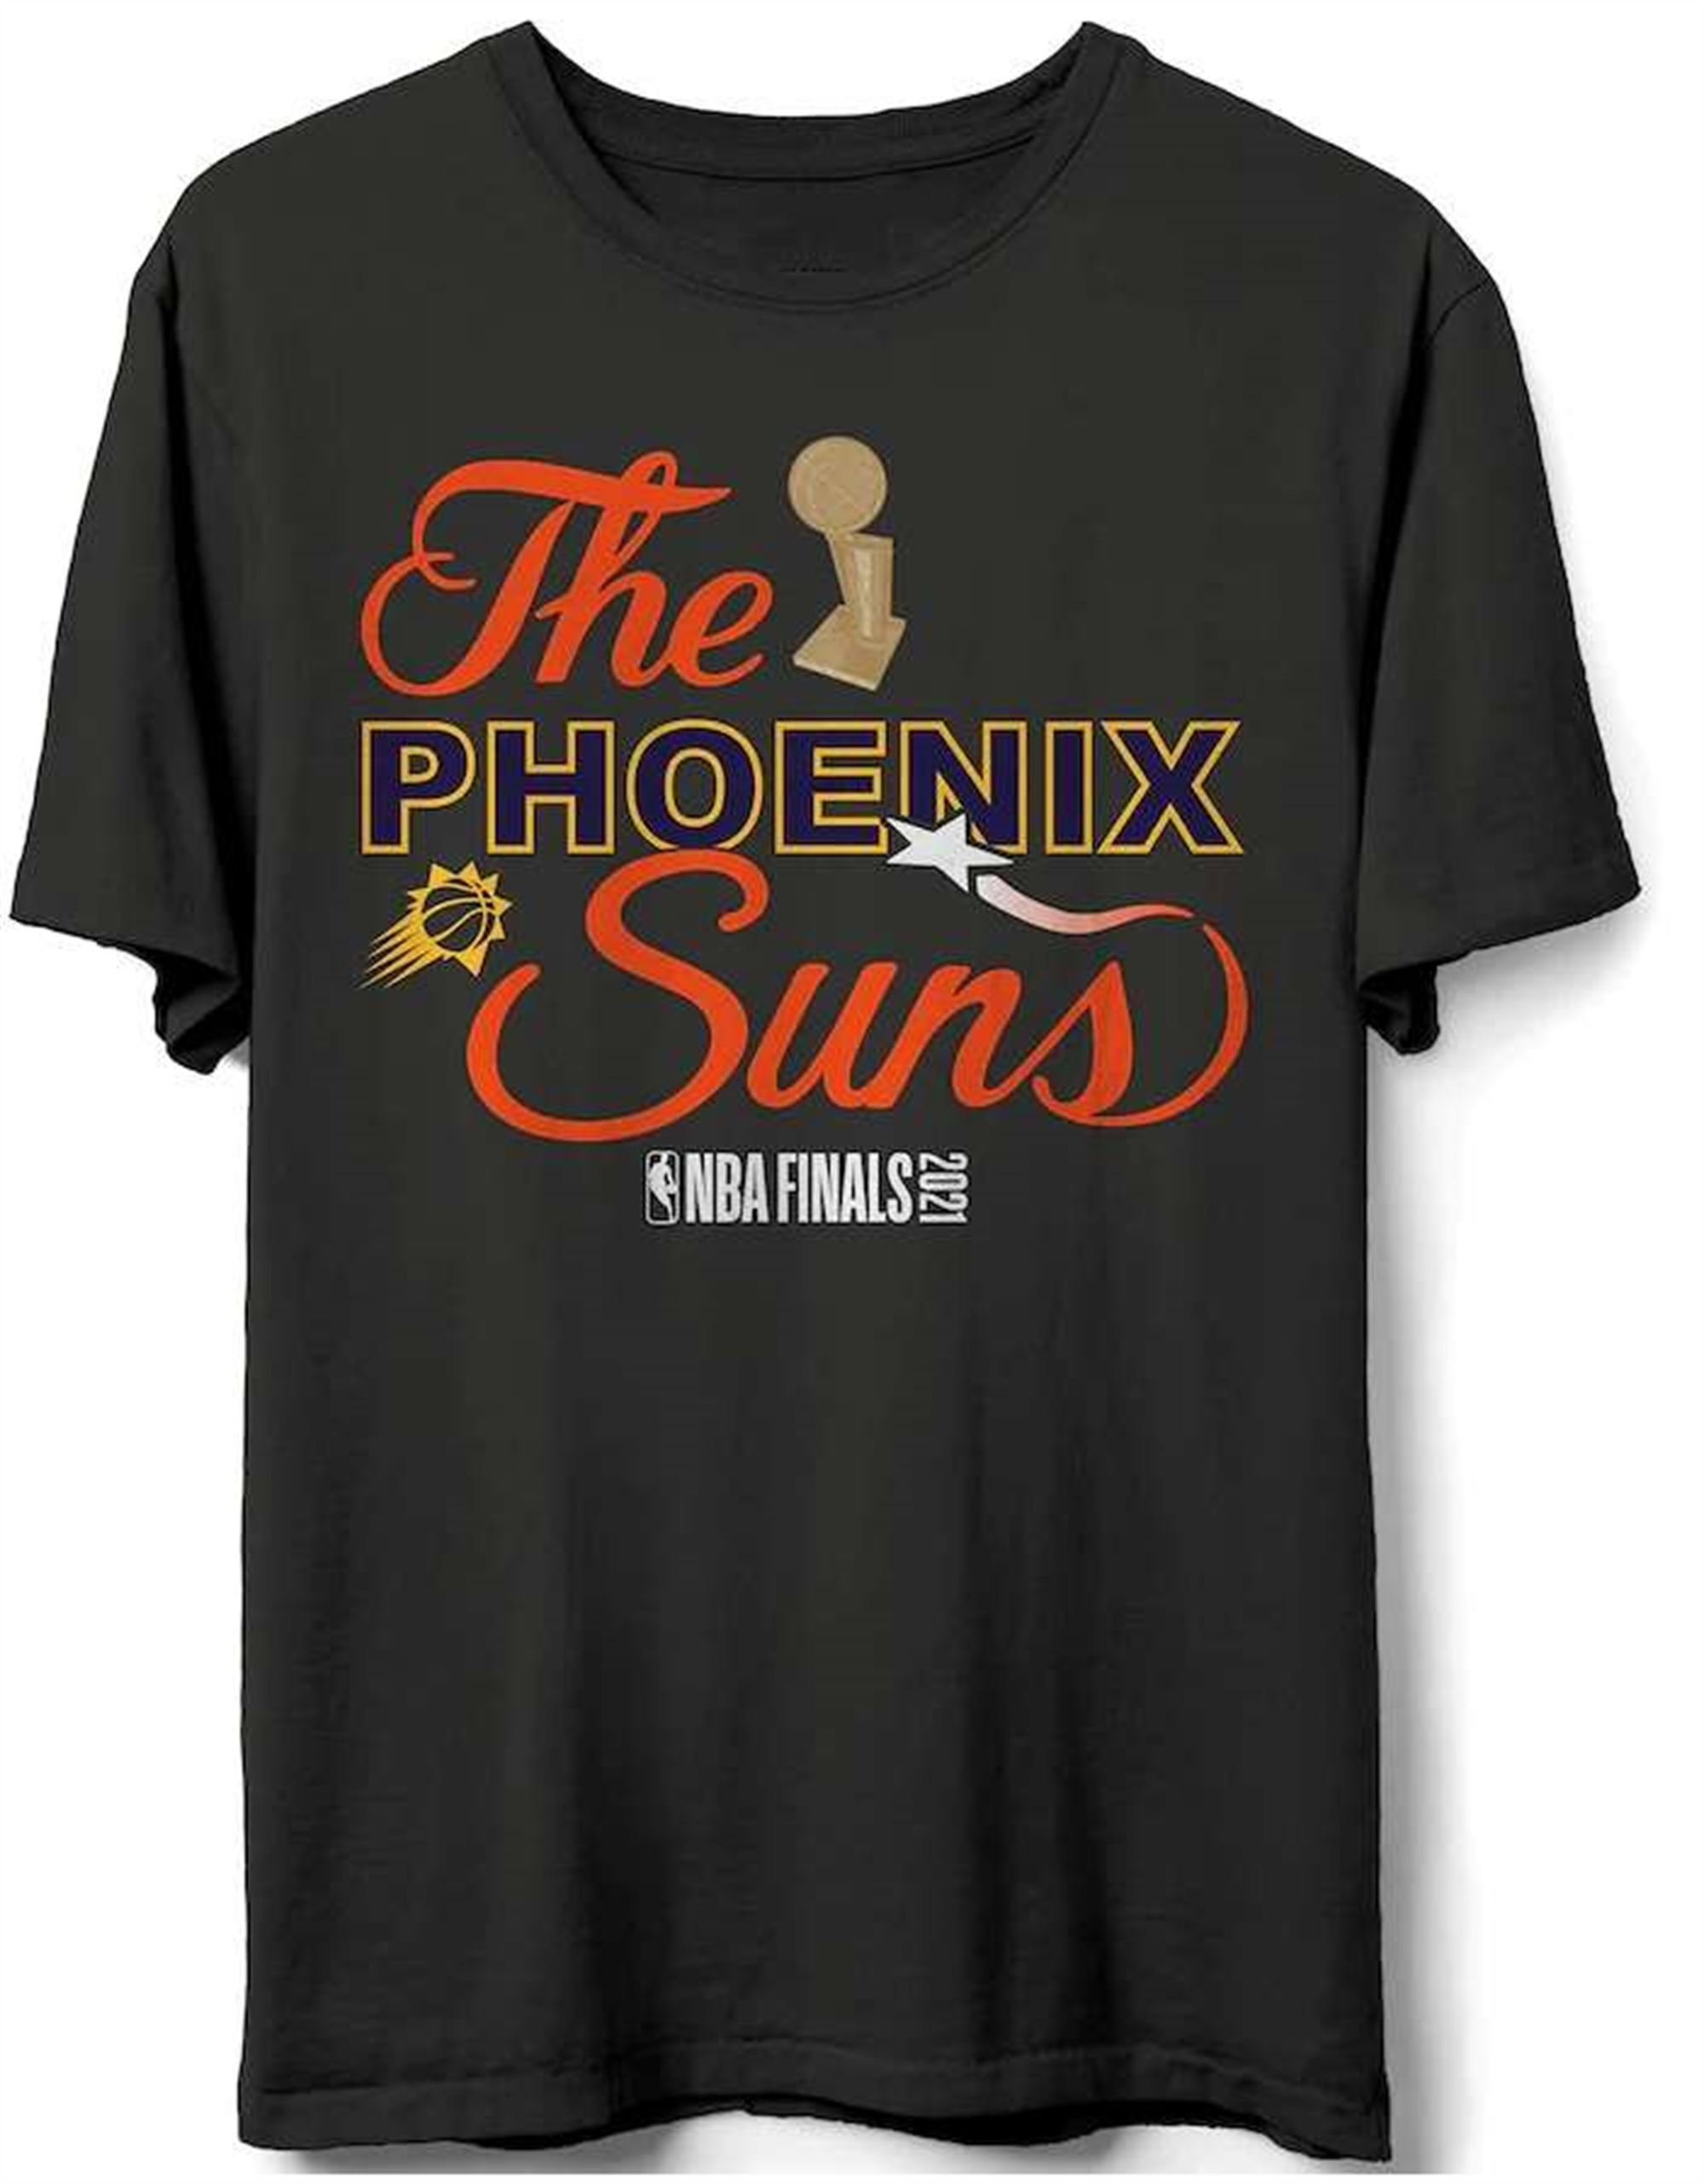 Phoenix Suns 2021 Nba Finals Unisex T Shirt Size Up To 5xl